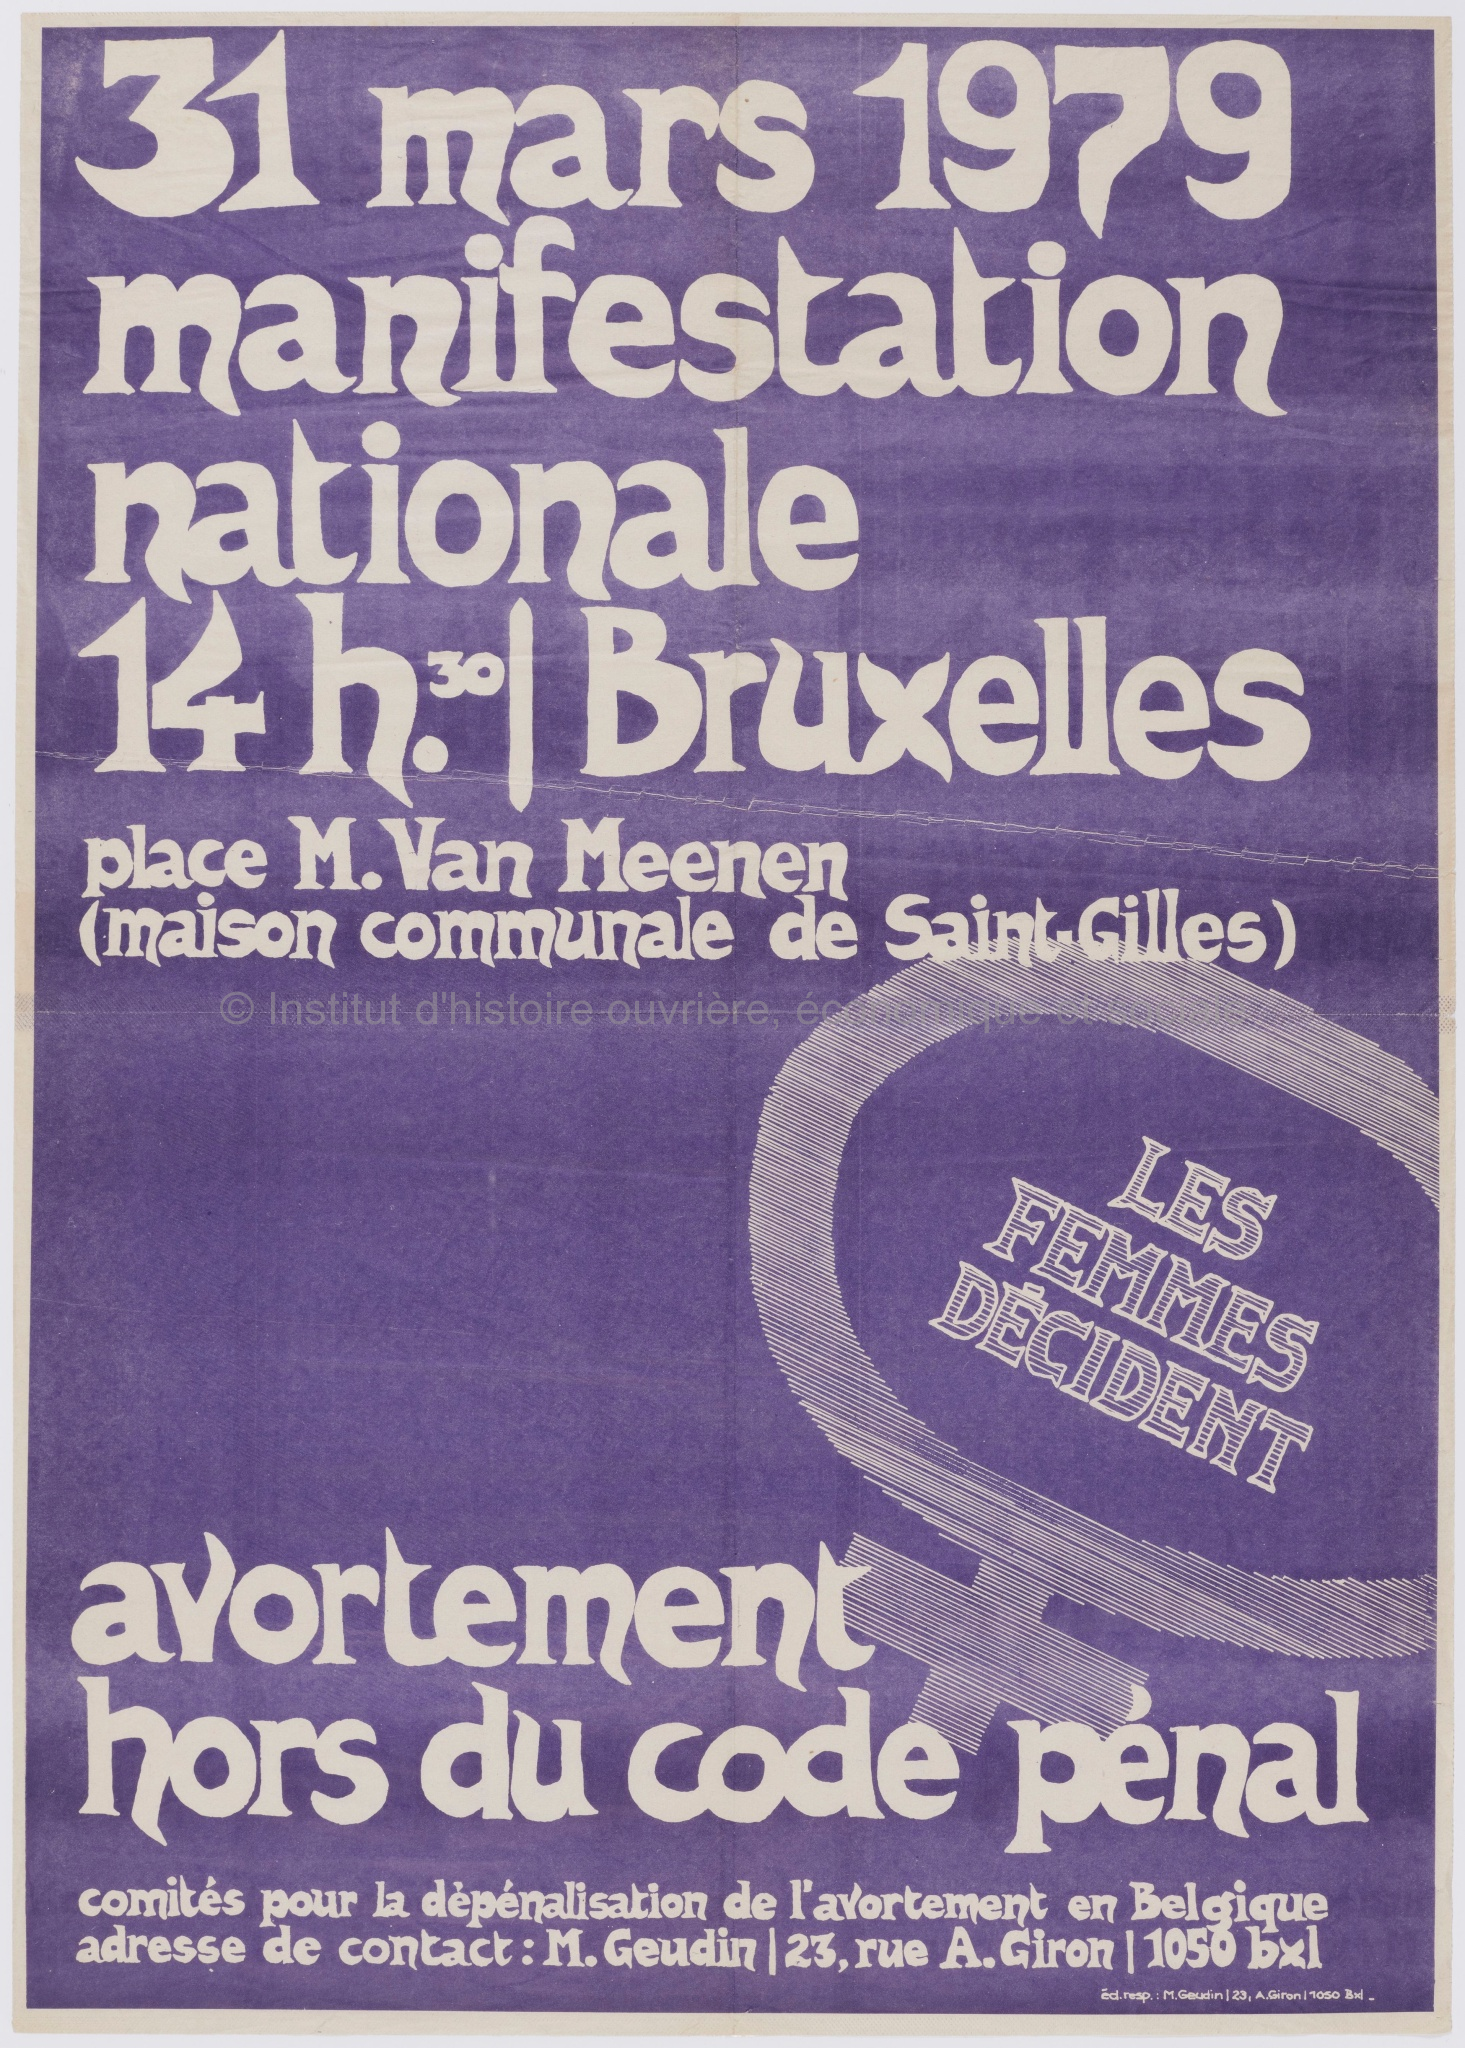 31 mars 1979, manifestation nationale 14h30, Bruxelles : avortement hors du code pénal : les femmes décident